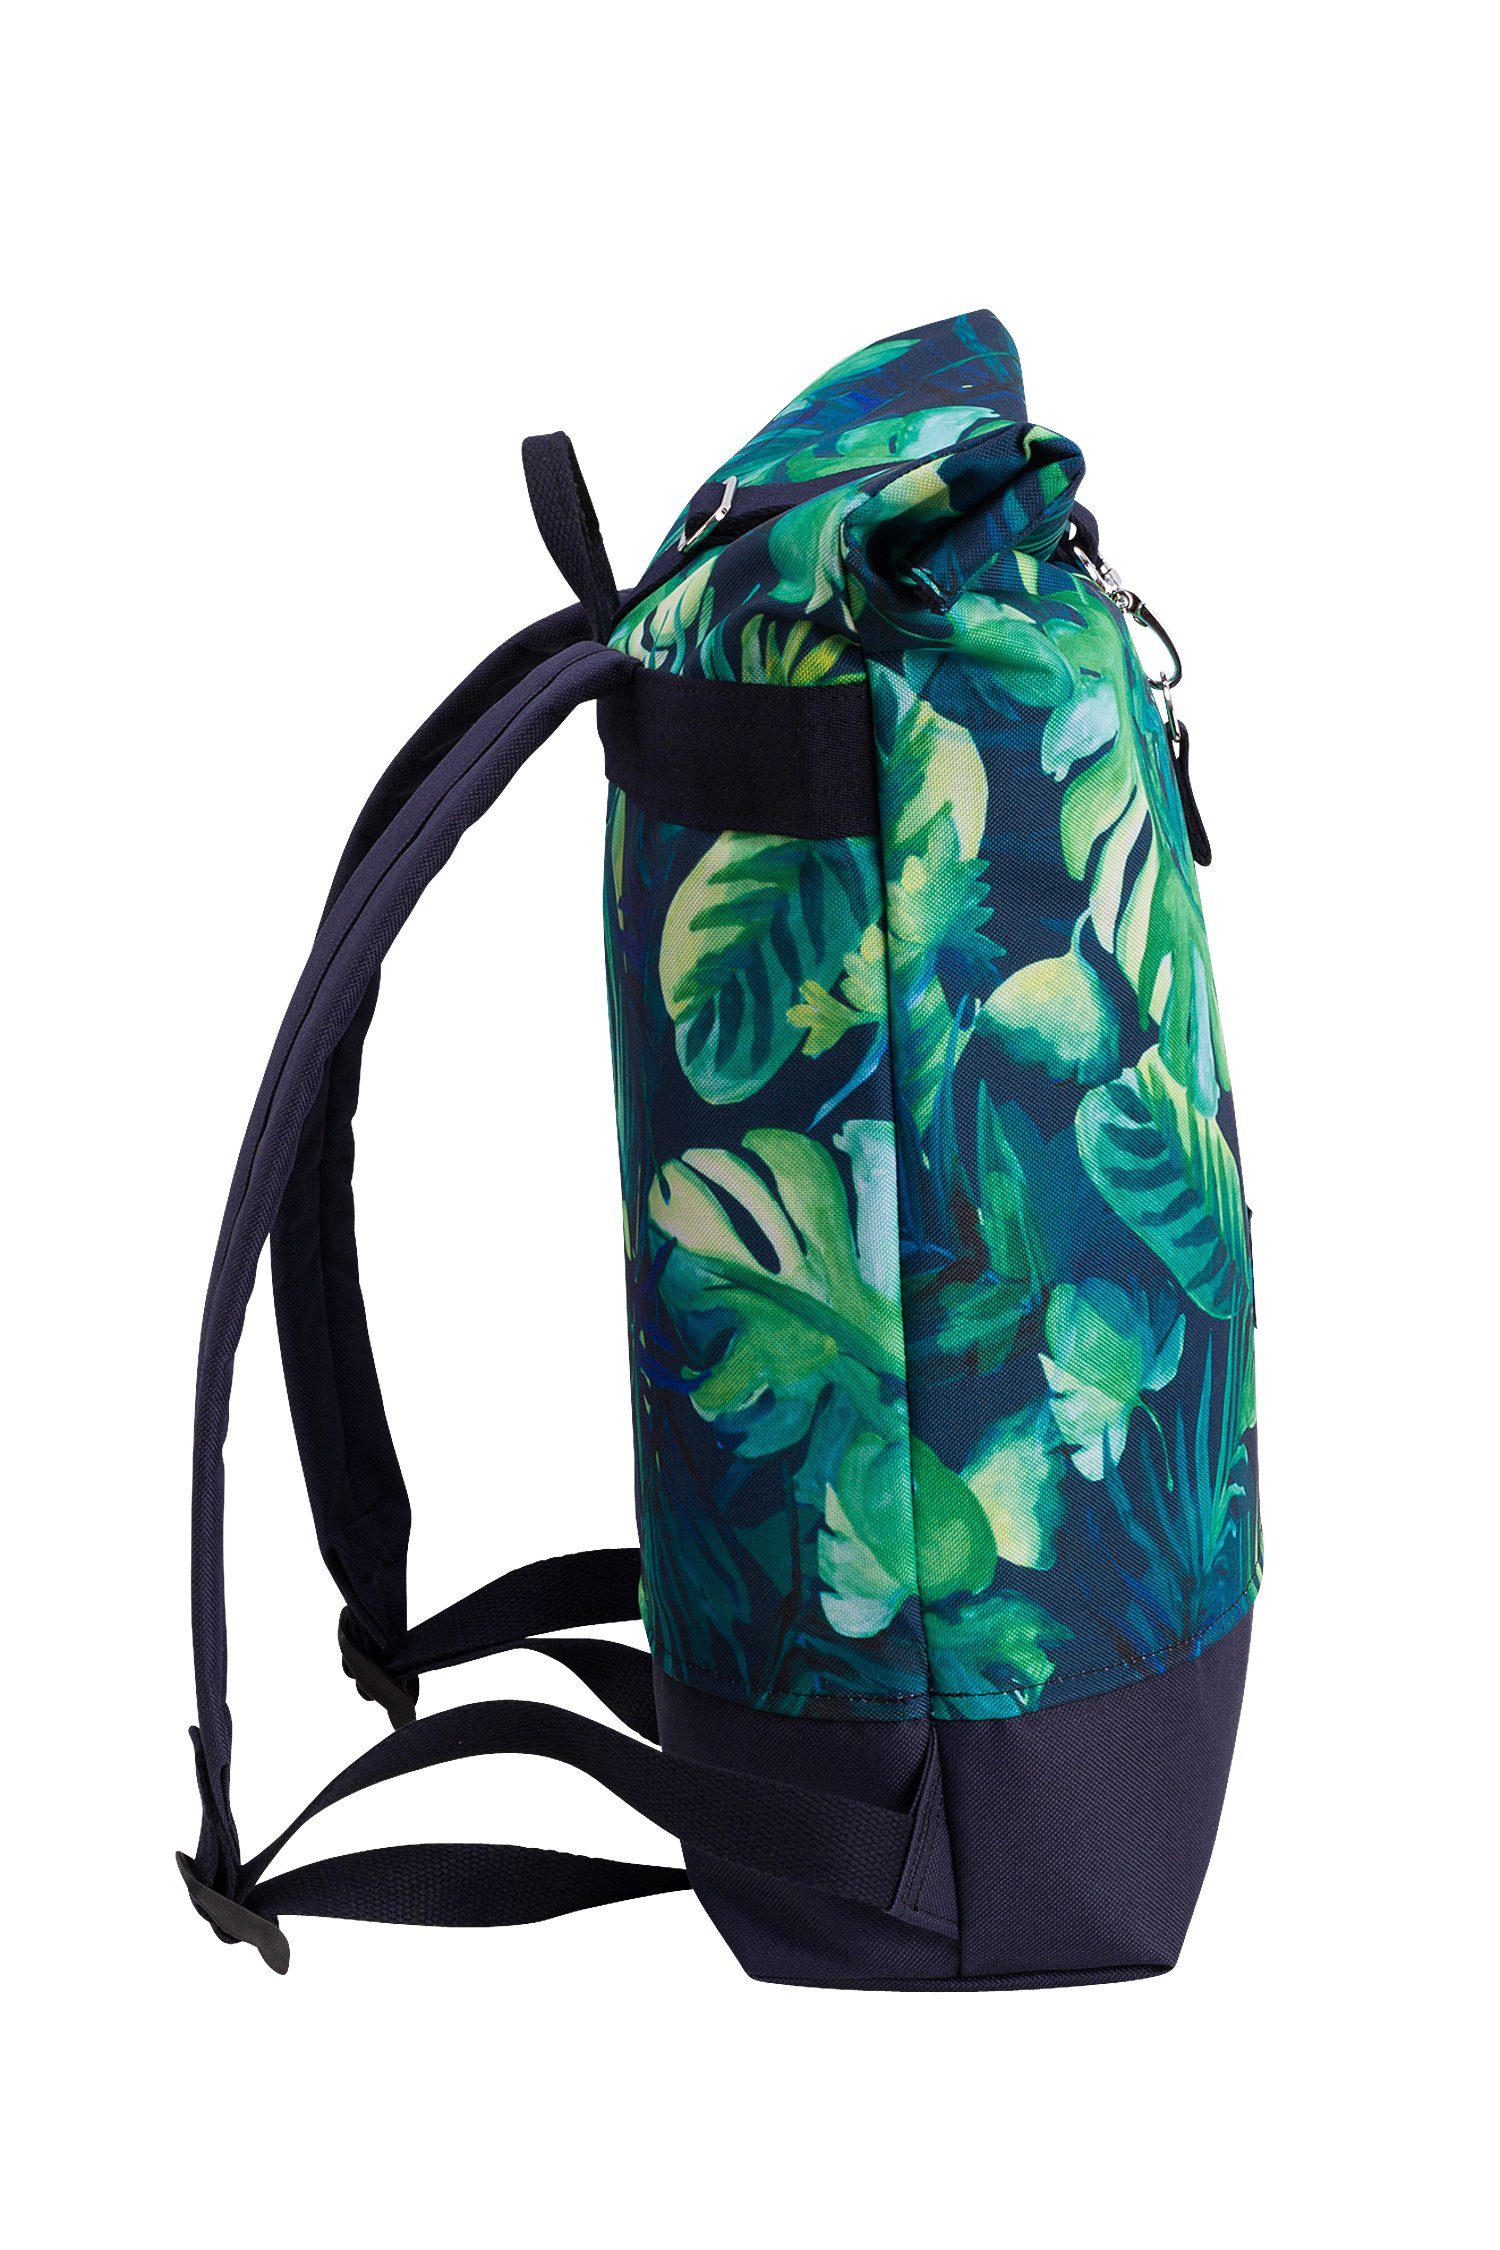 Manufaktur13 Tagesrucksack Mini Roll-Top Backpack Rucksack Gurte wasserdicht/wasserabweisend, verstellbare Madeira - mit Rollverschluss